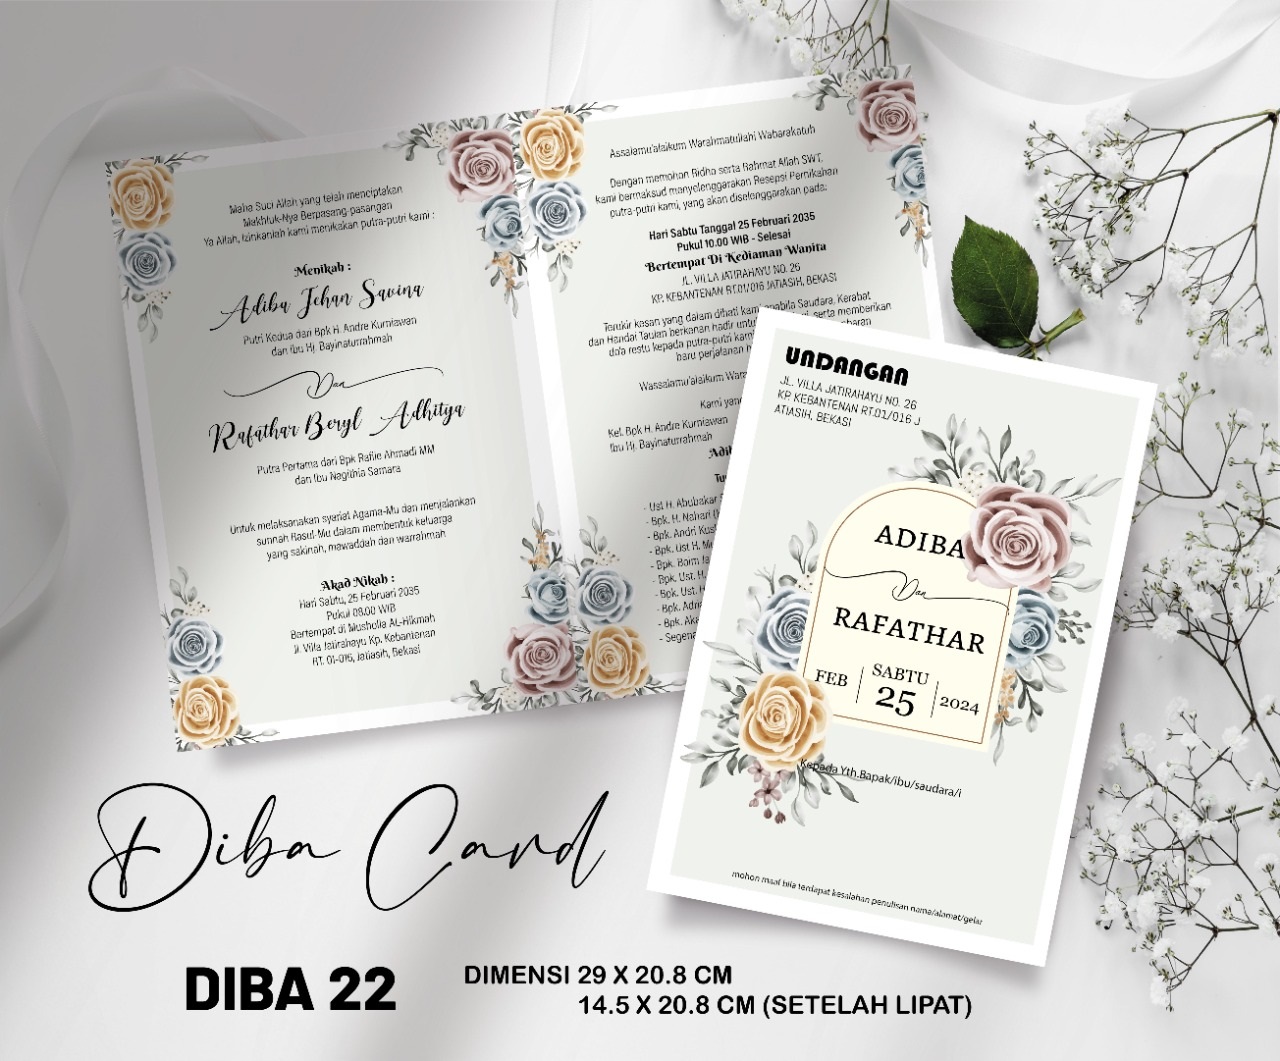 DIBA CARD 22 